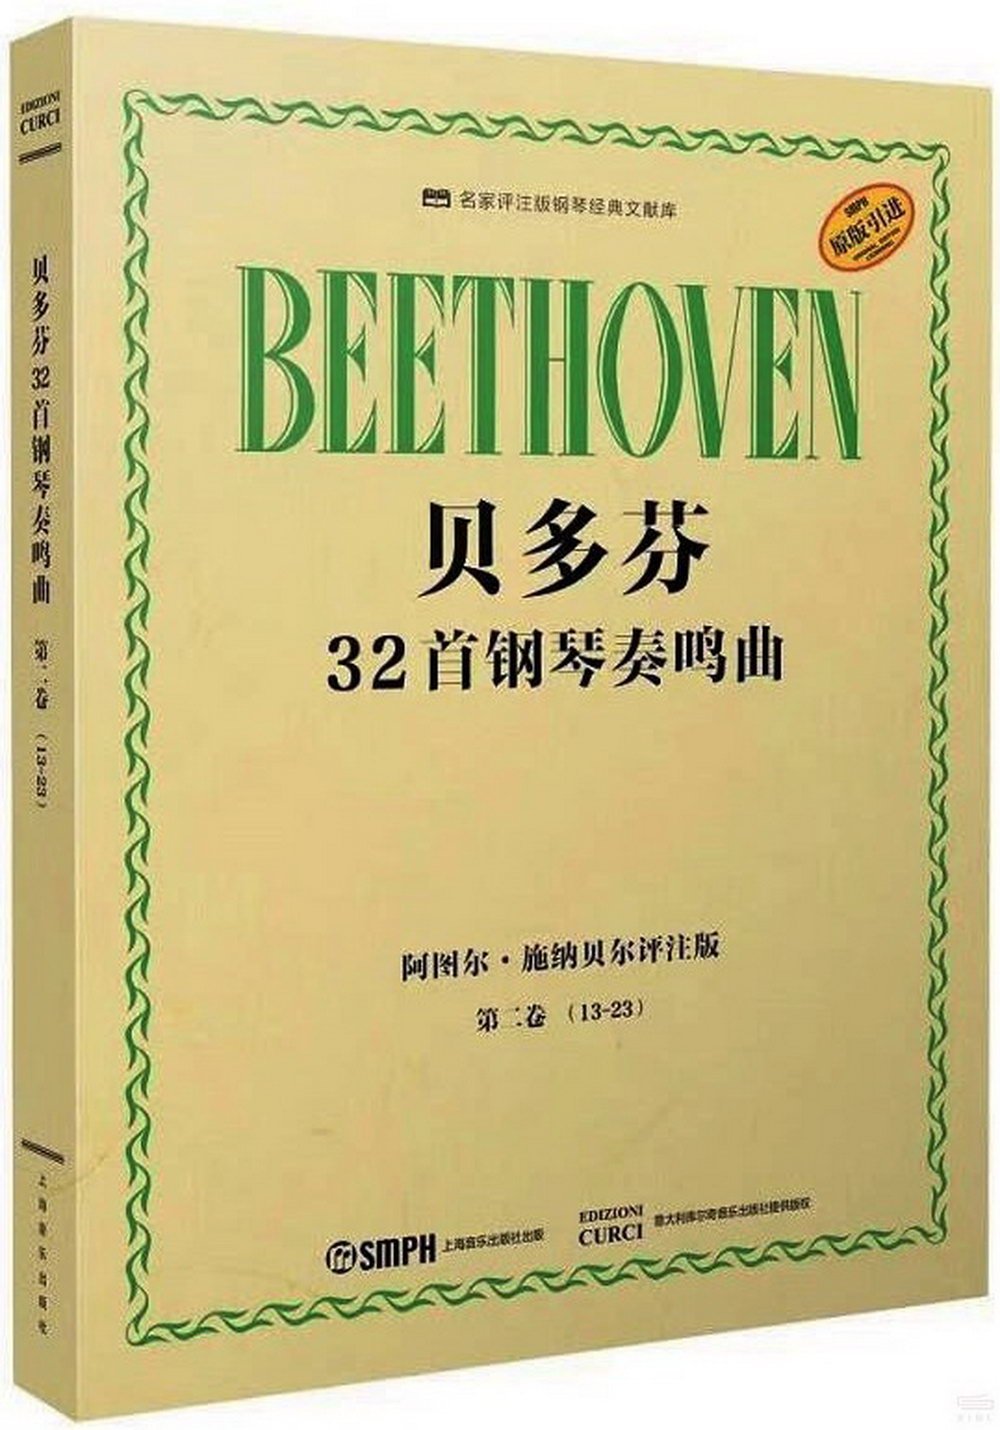 貝多芬32首鋼琴奏鳴曲：第二卷(13-23)(阿圖爾·施納貝爾評註版)